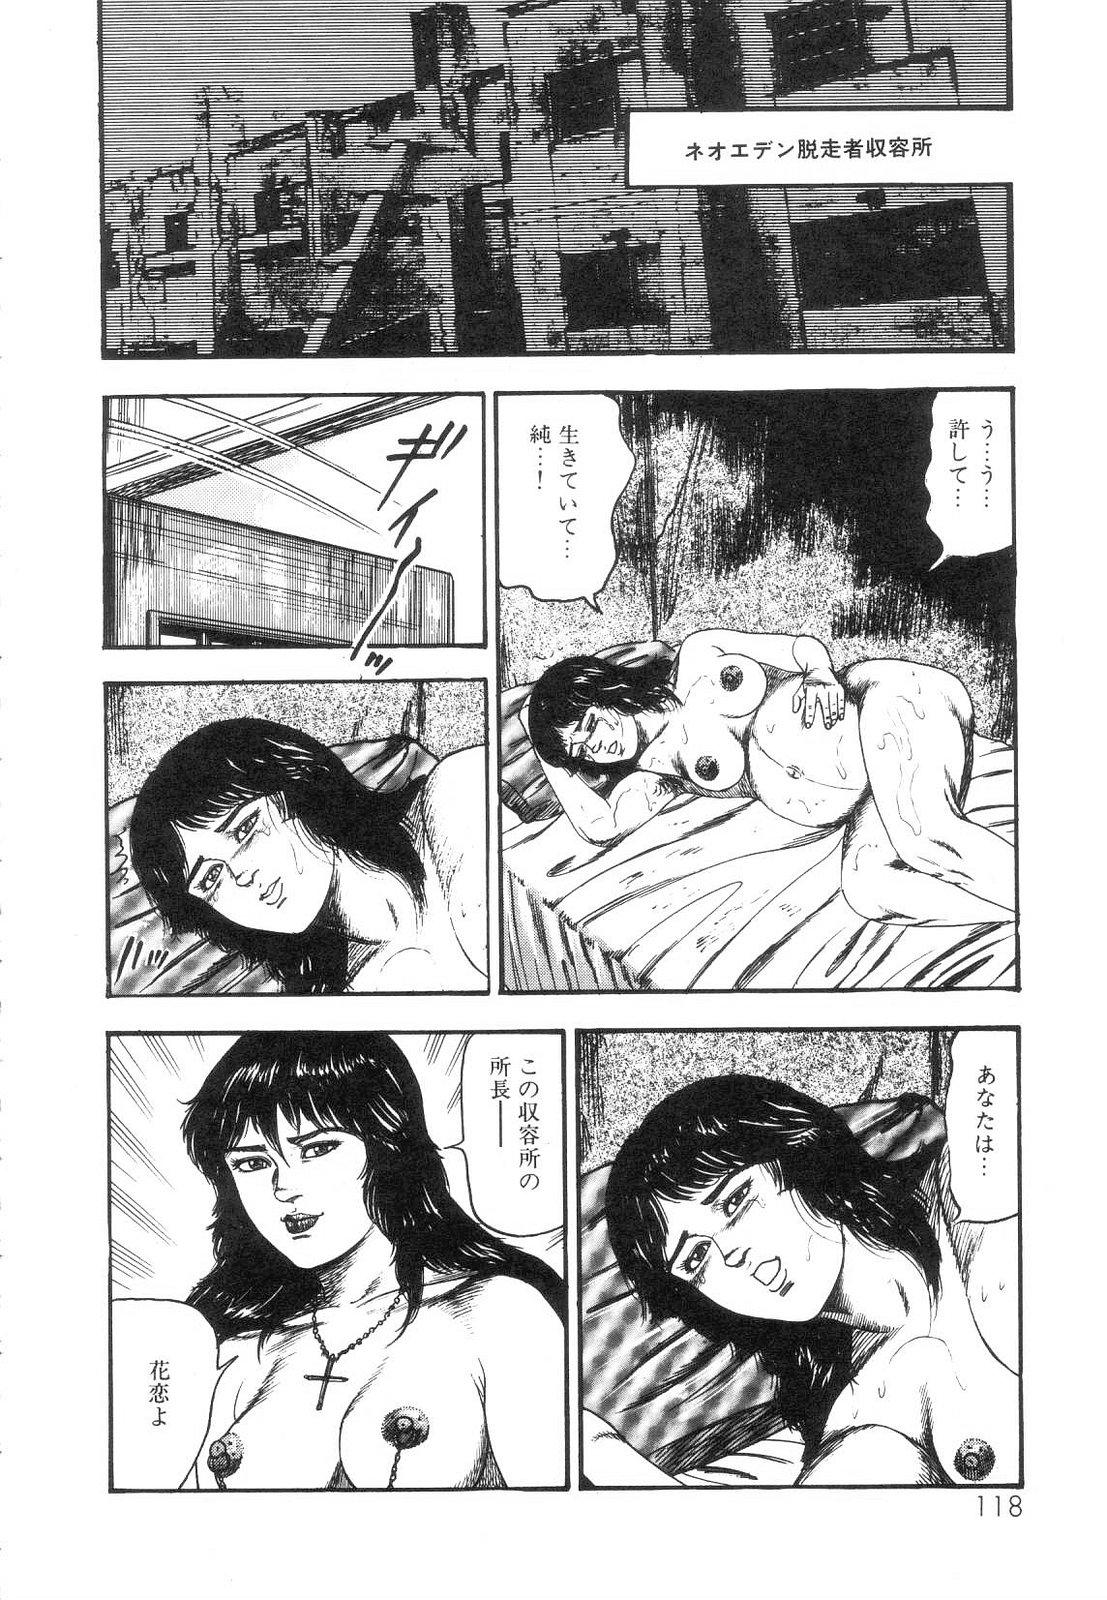 Shiro no Mokushiroku Vol. 5 - Ninshoujo Erika no Shou 119